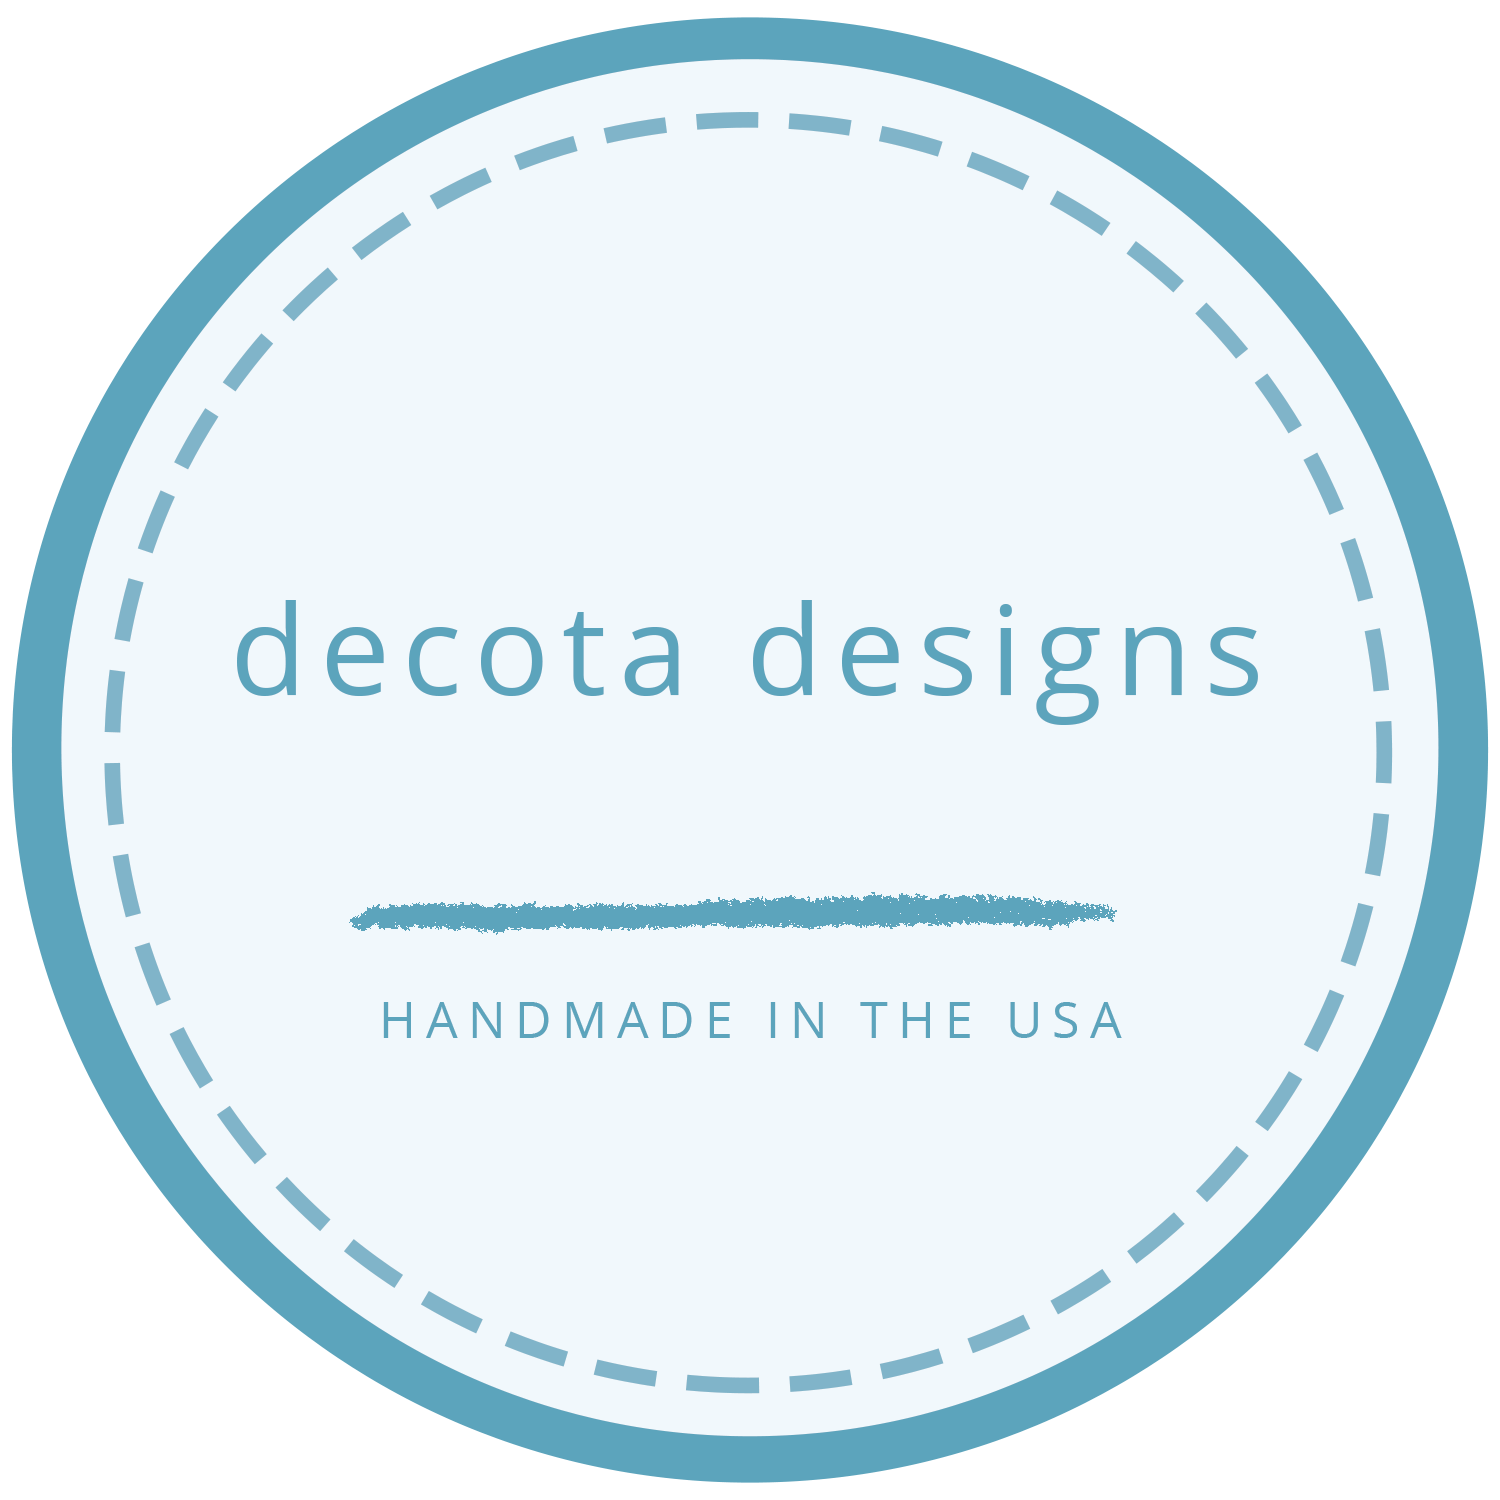 Decota Designs